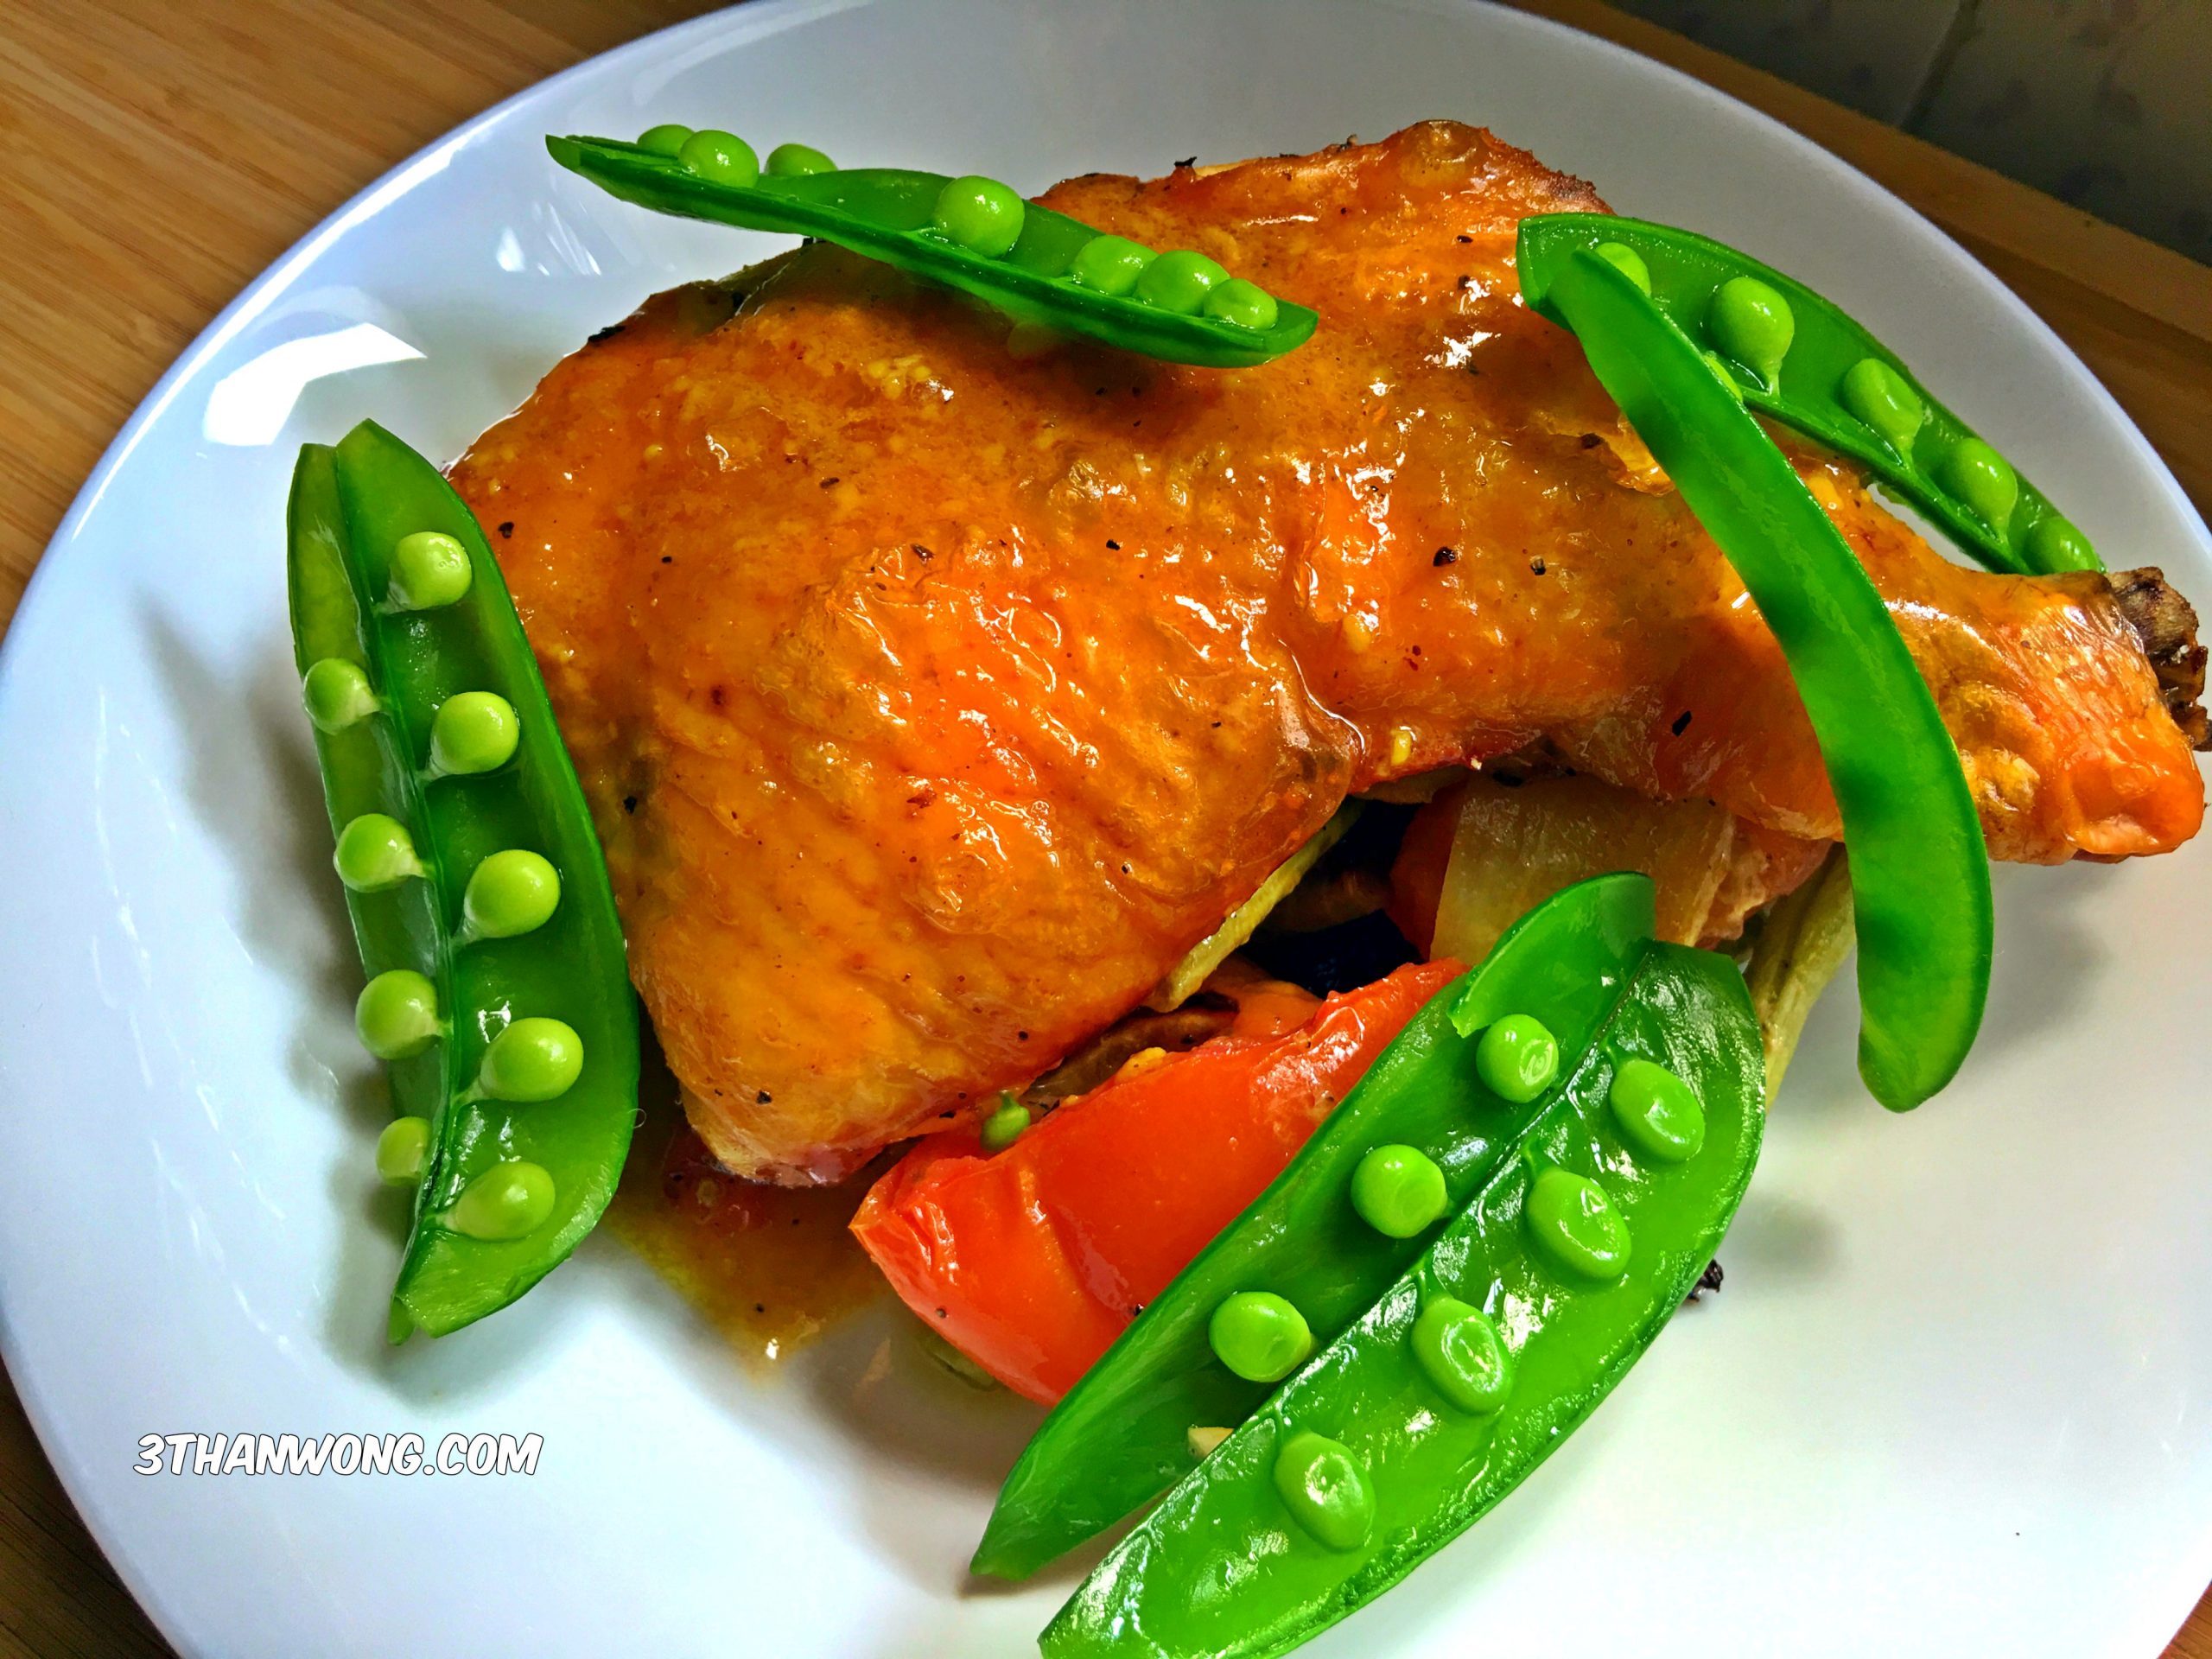 Roasted Chicken Leg – Best Baked Chicken Recipe